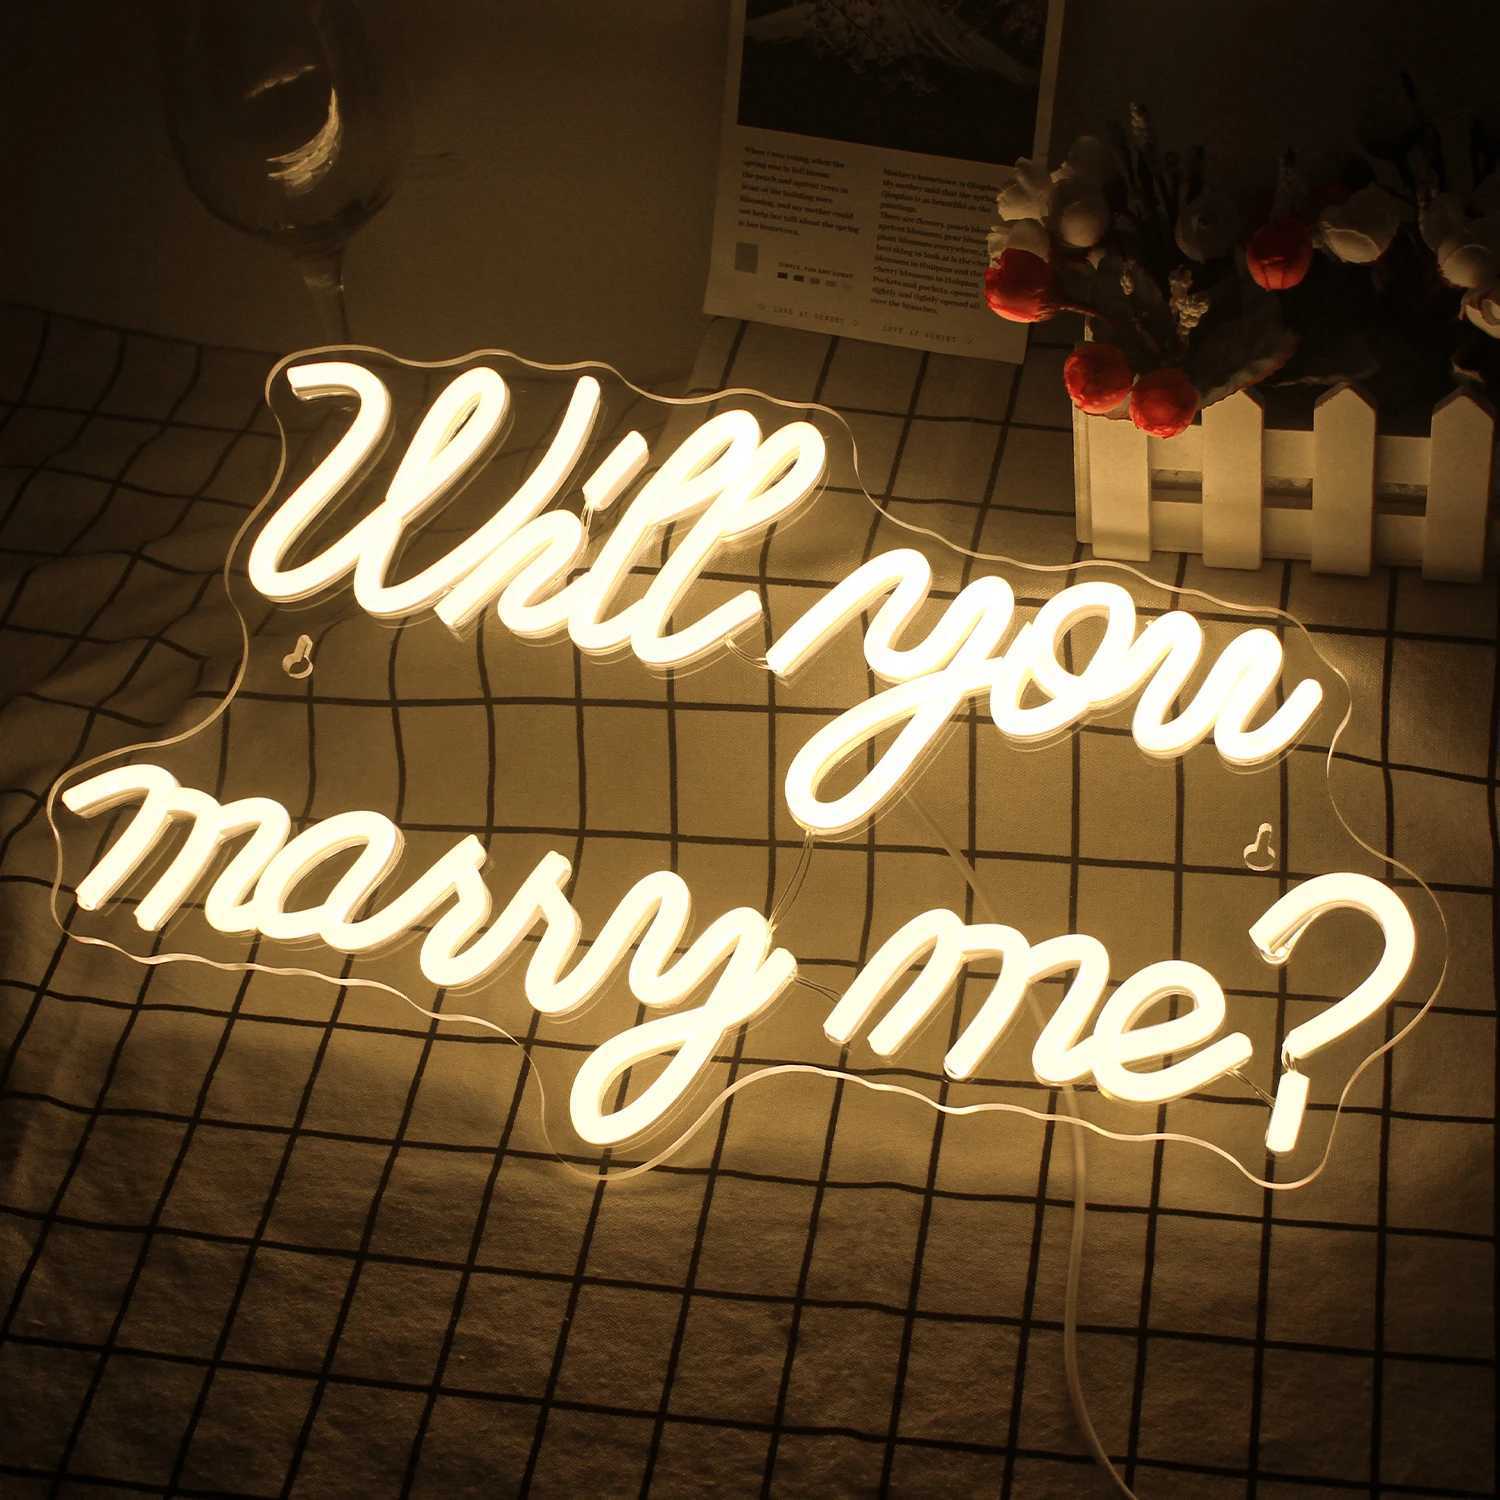 Ledde neonskylt kommer du att gifta dig med mig neonskylt ledande ljus för romantisk överraskning förslag bröllop dekorationer sovrum väggdekor presentlampa yq240126